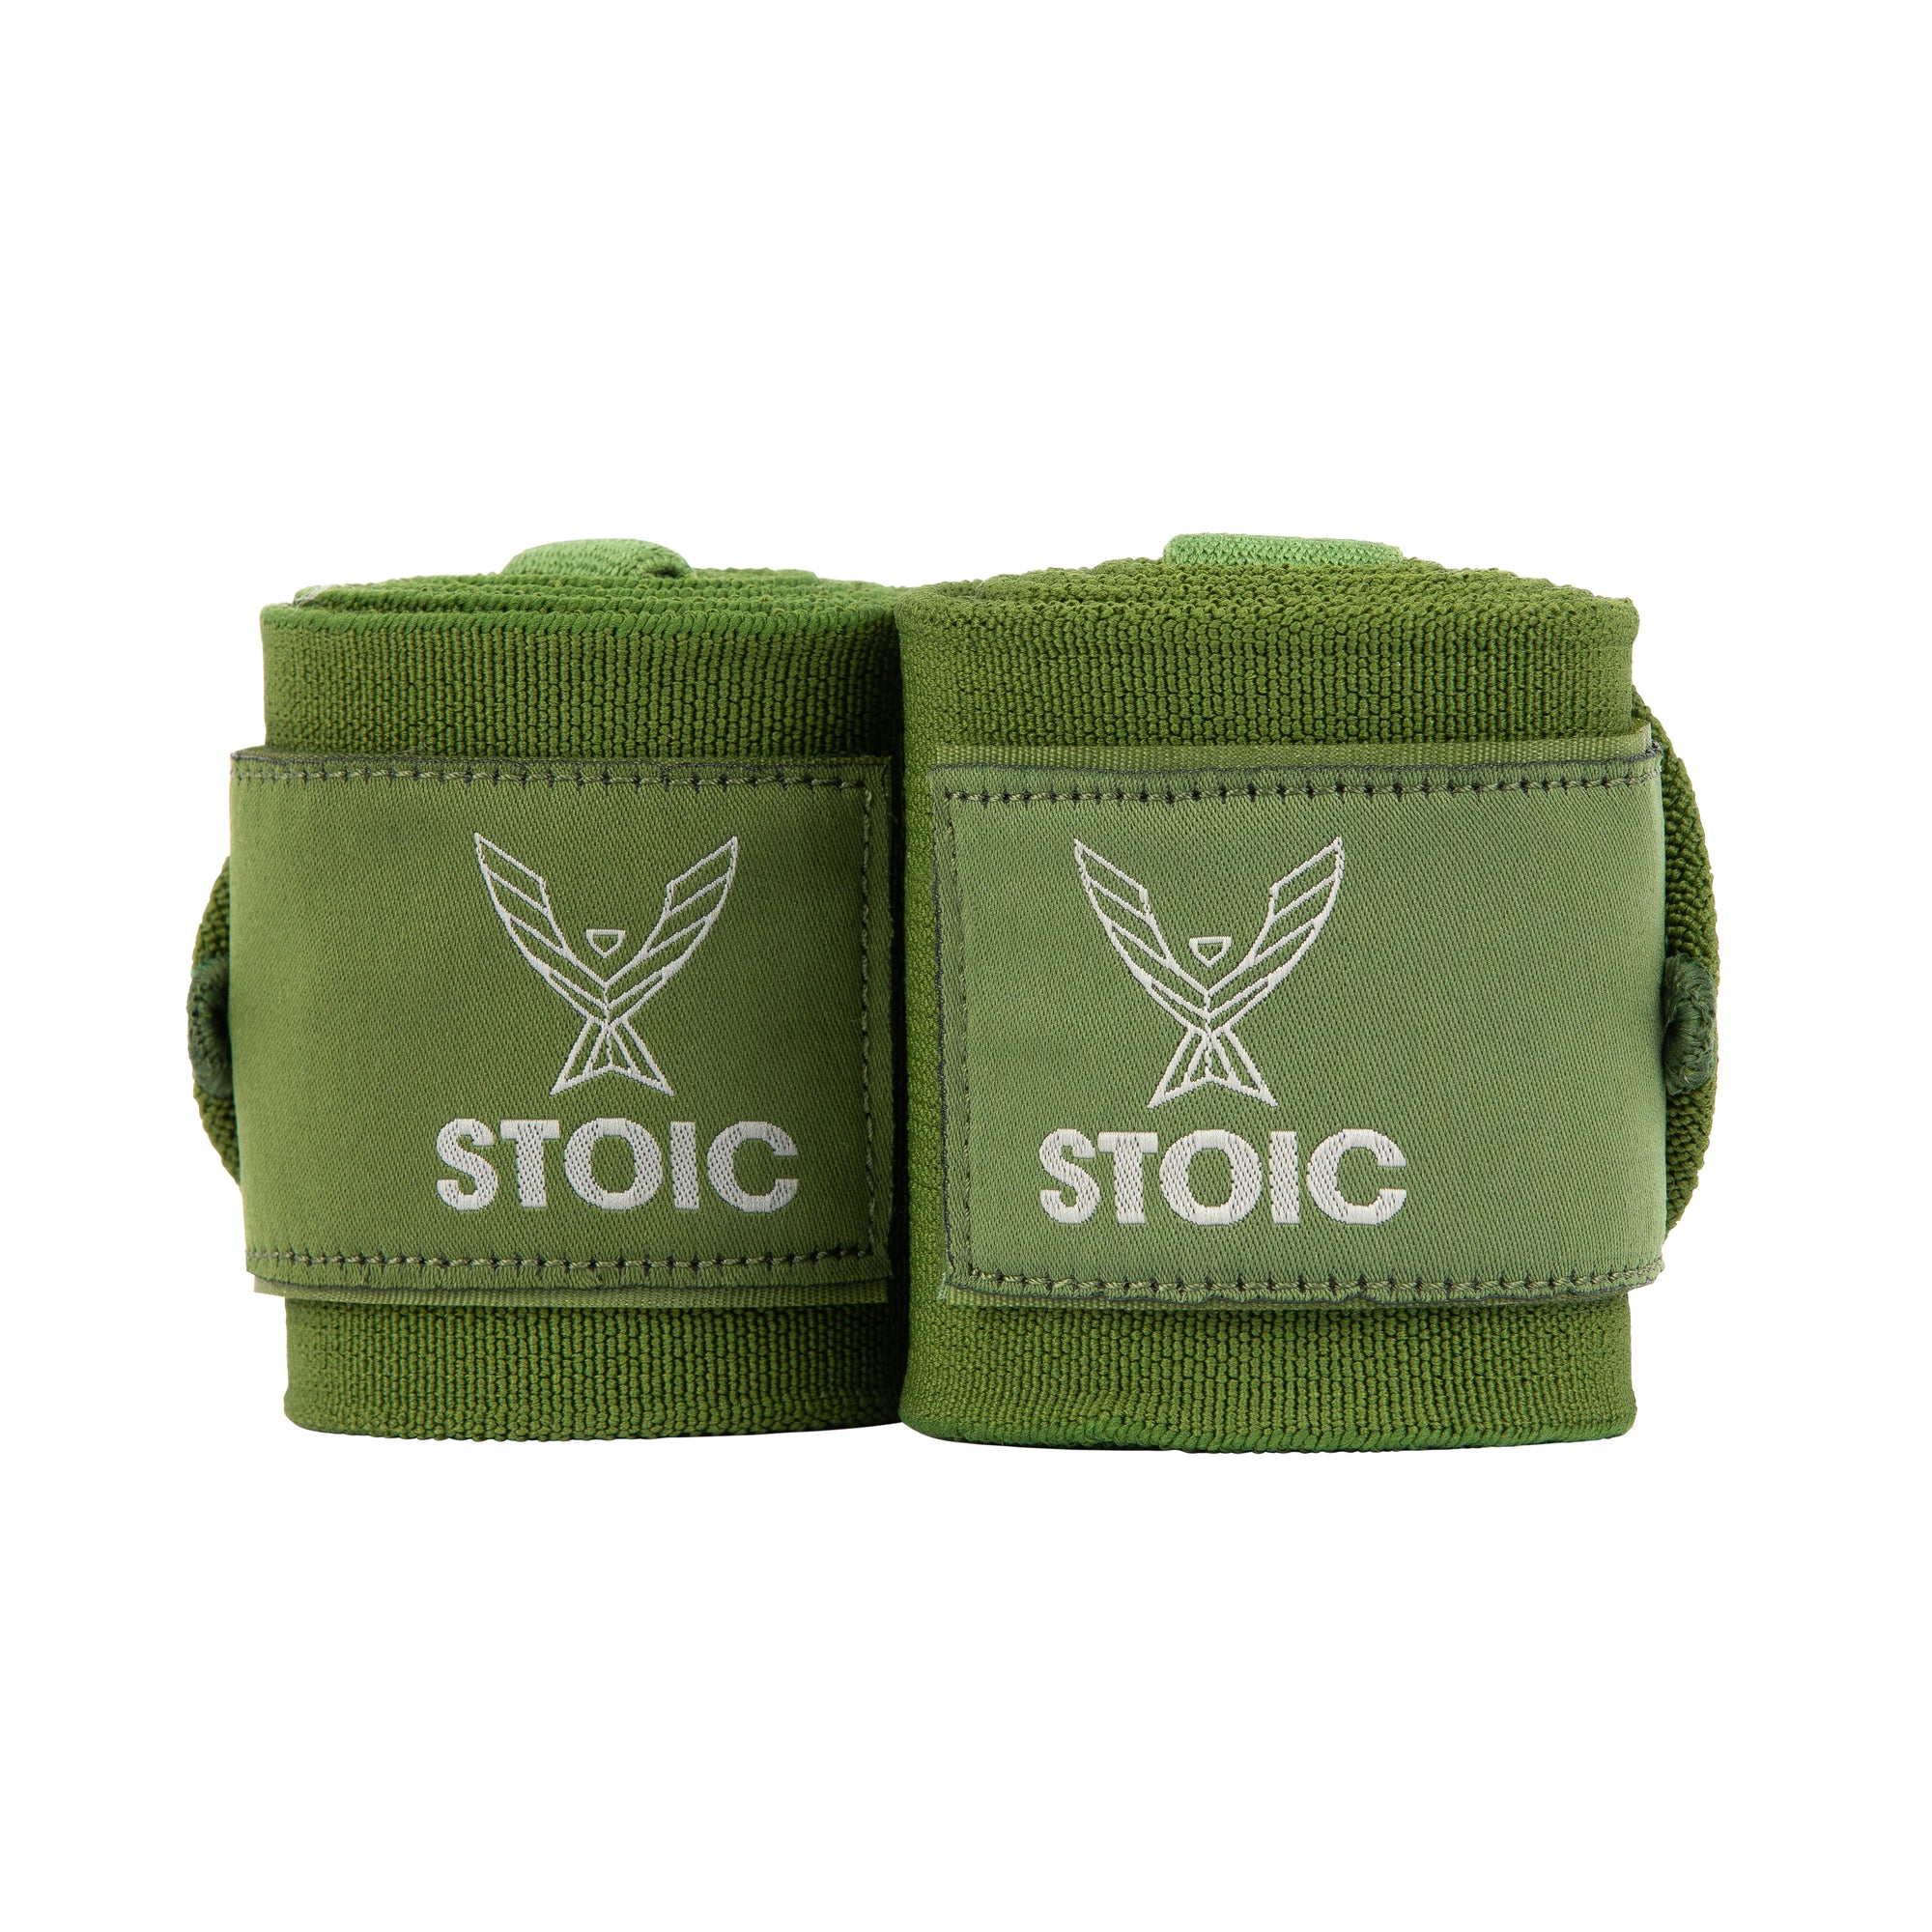 Stoic Wrist Wraps - Olive Drab